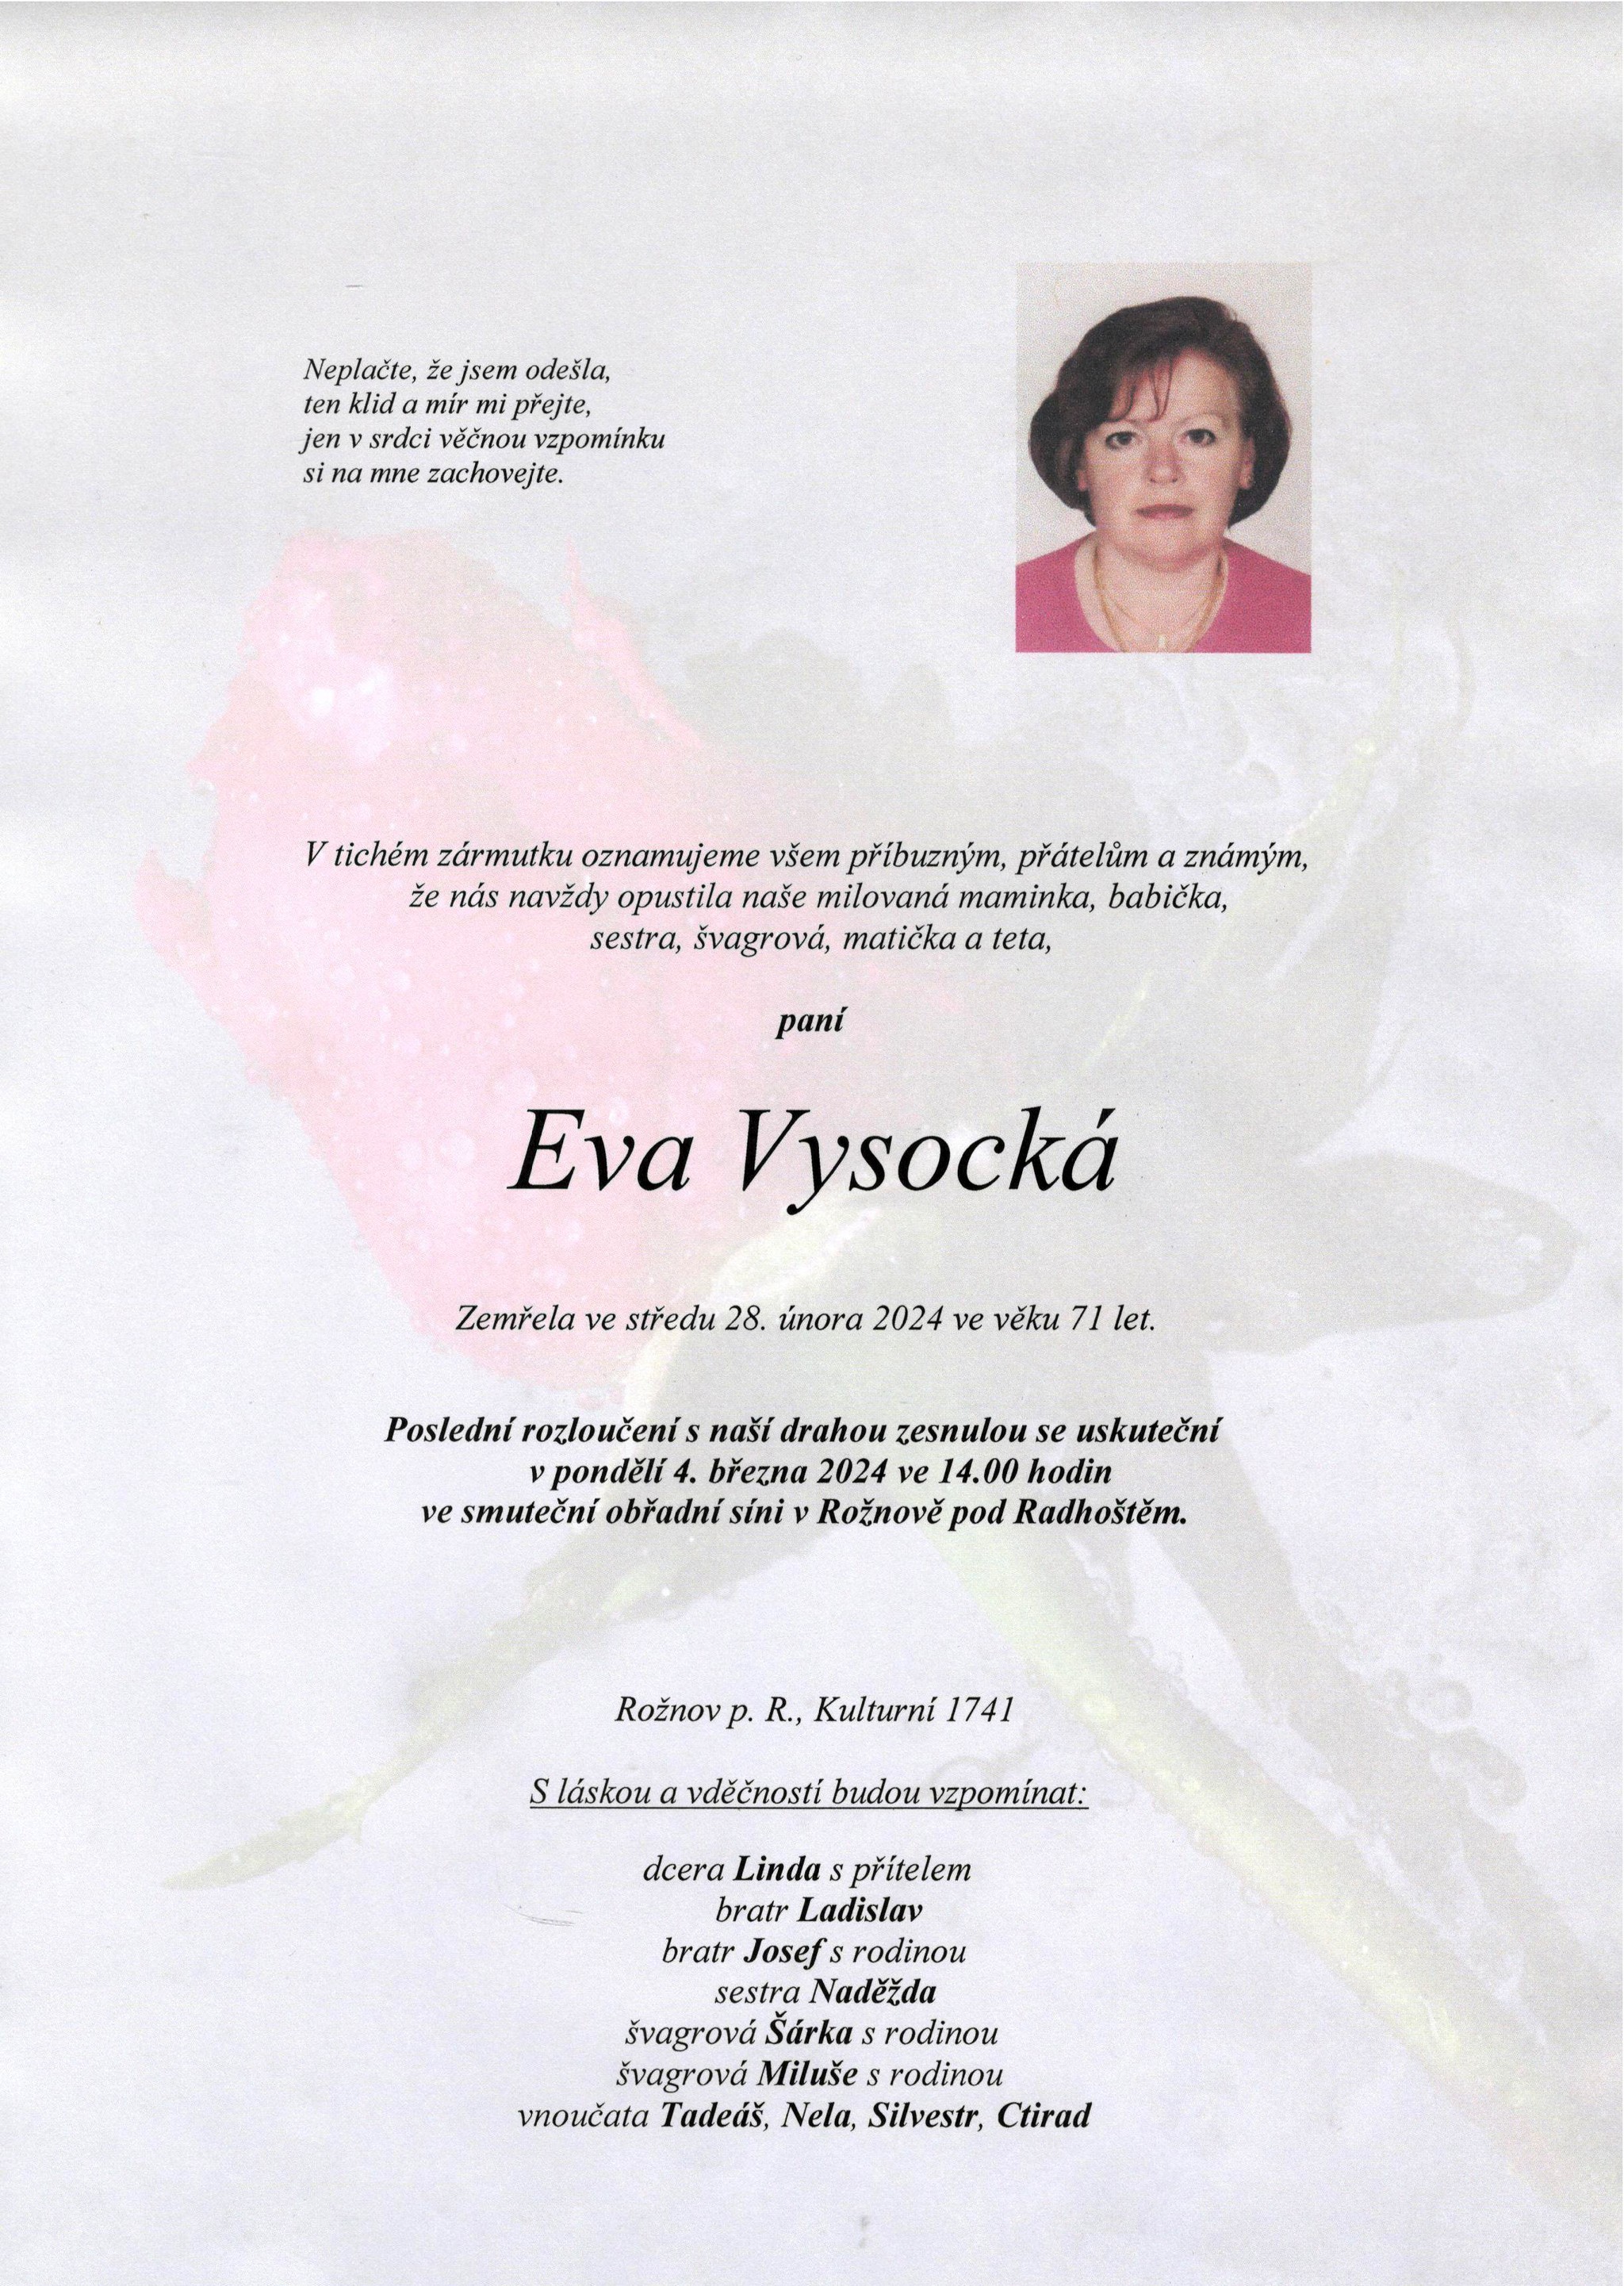 Eva Vysocká